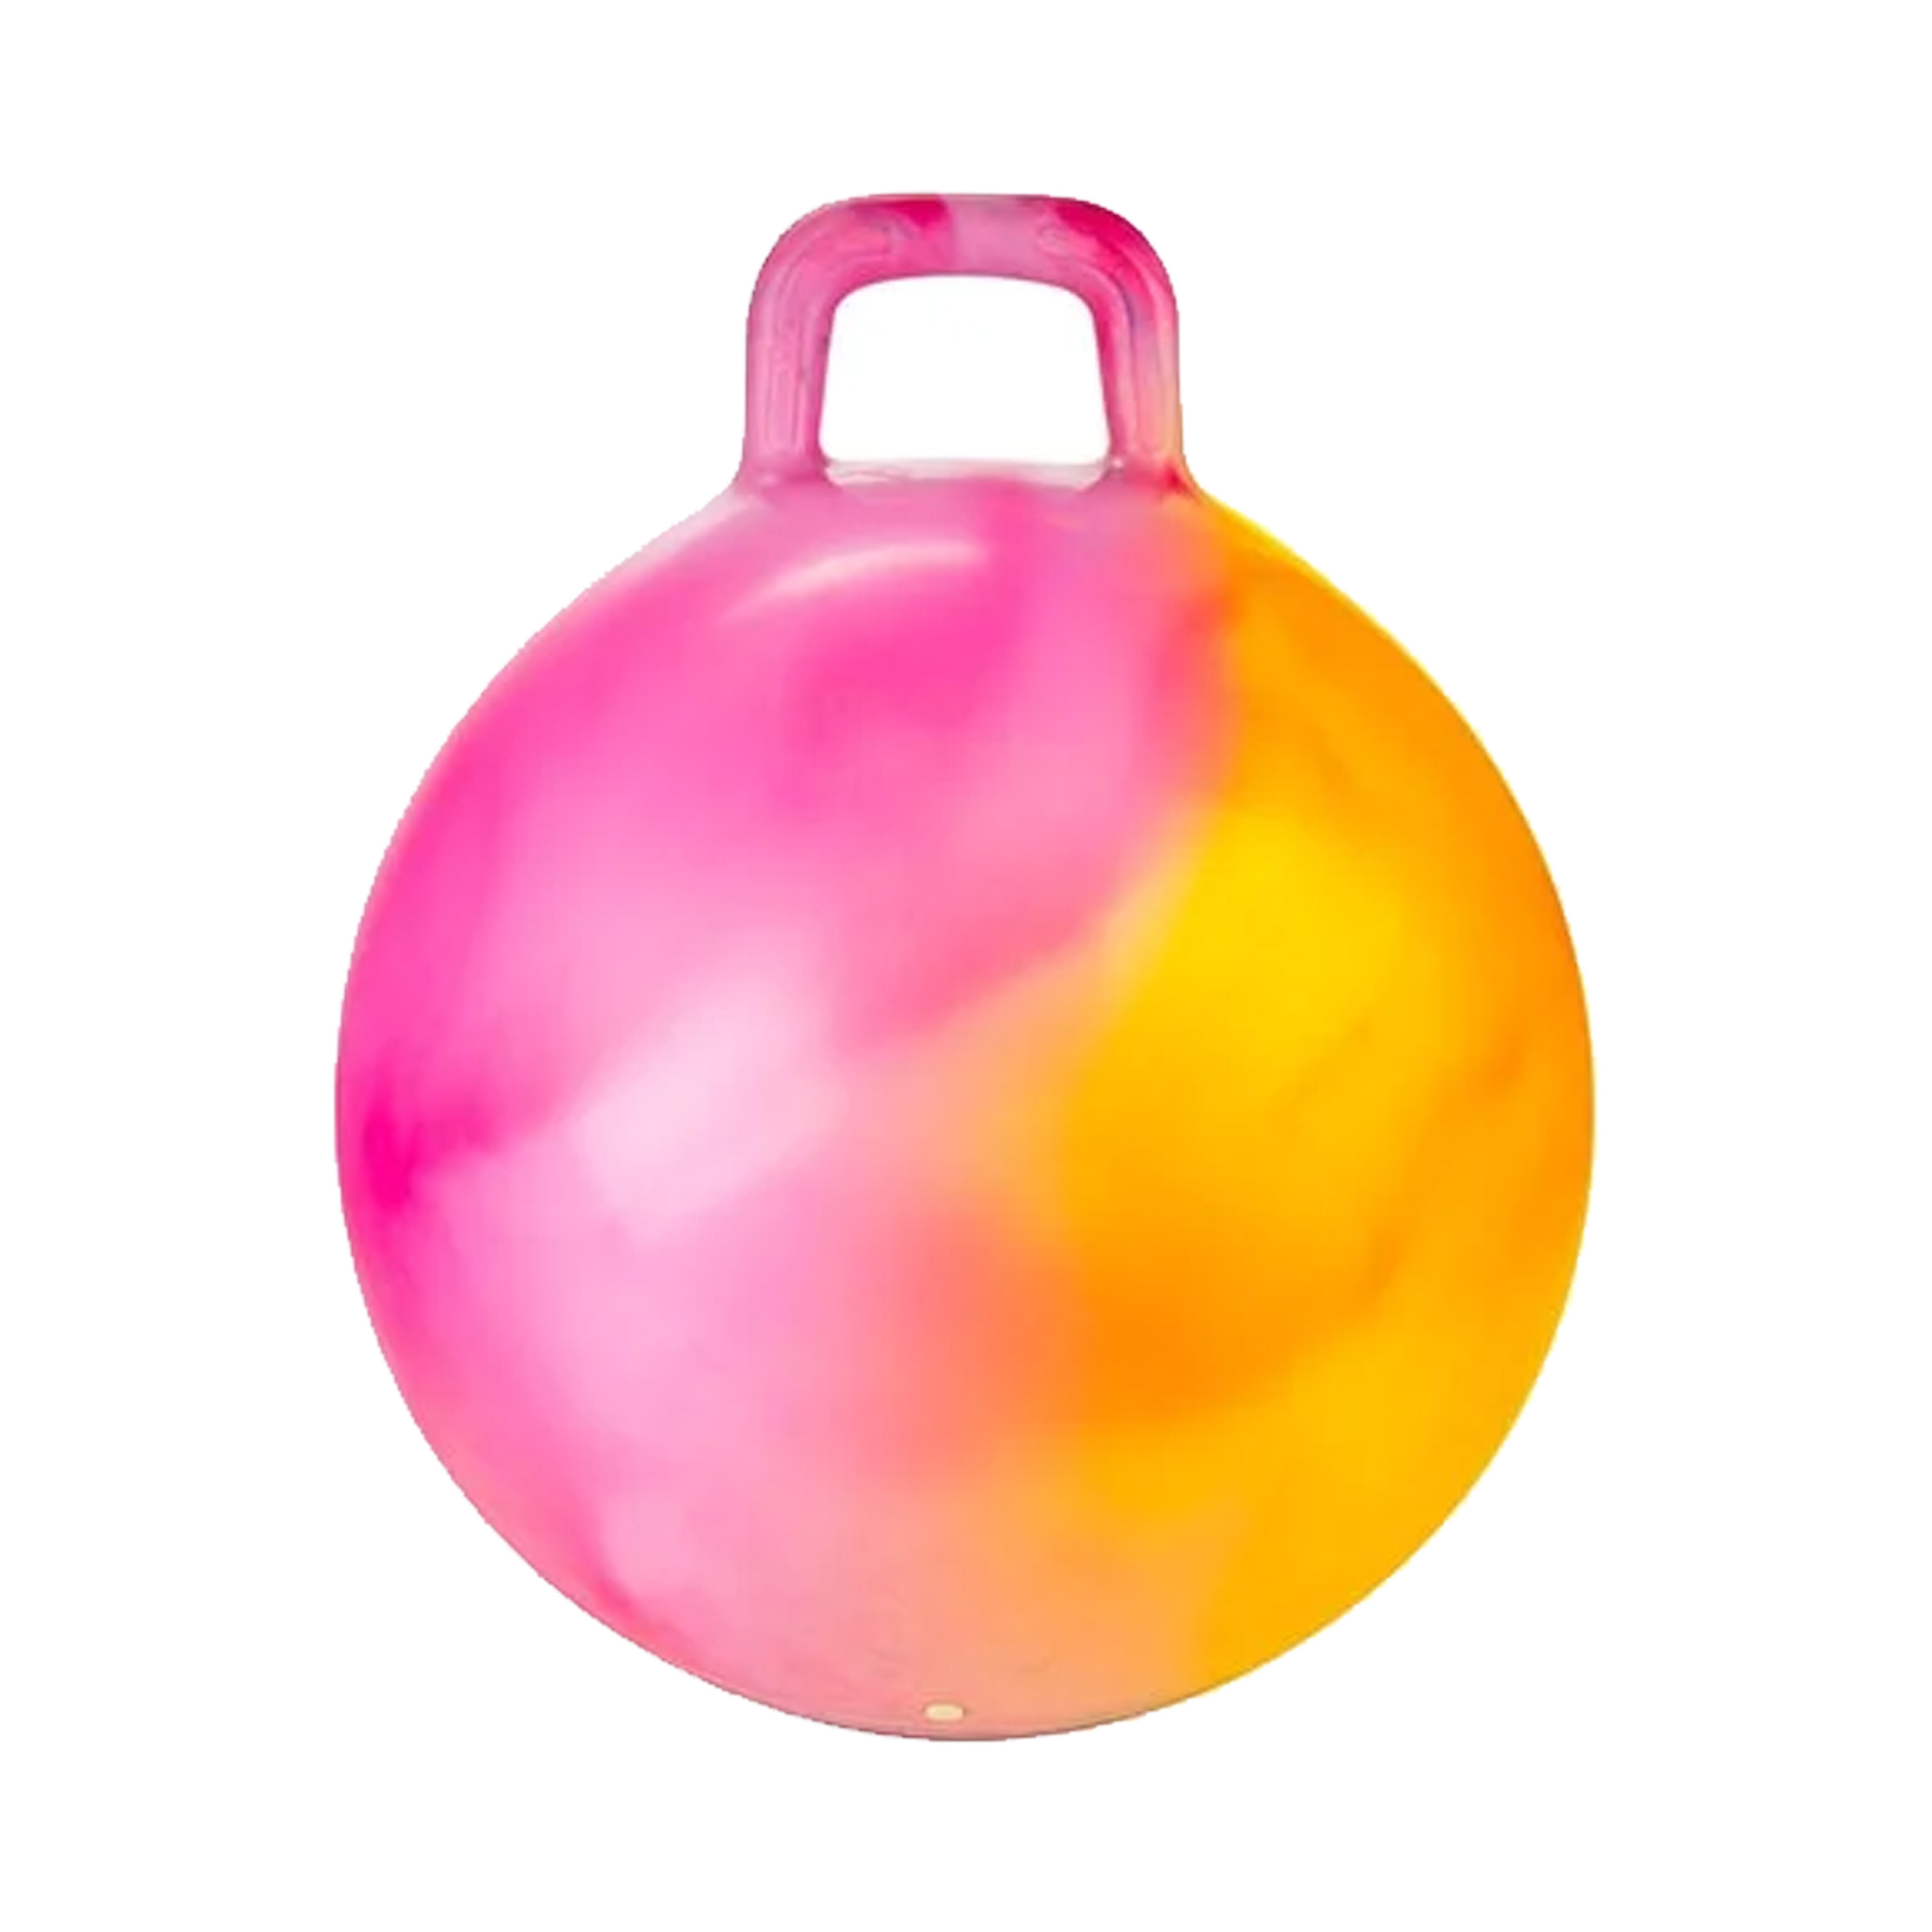 Skippybal marble - oranje/roze - D45 cm - buitenspeelgoed voor kinderen -